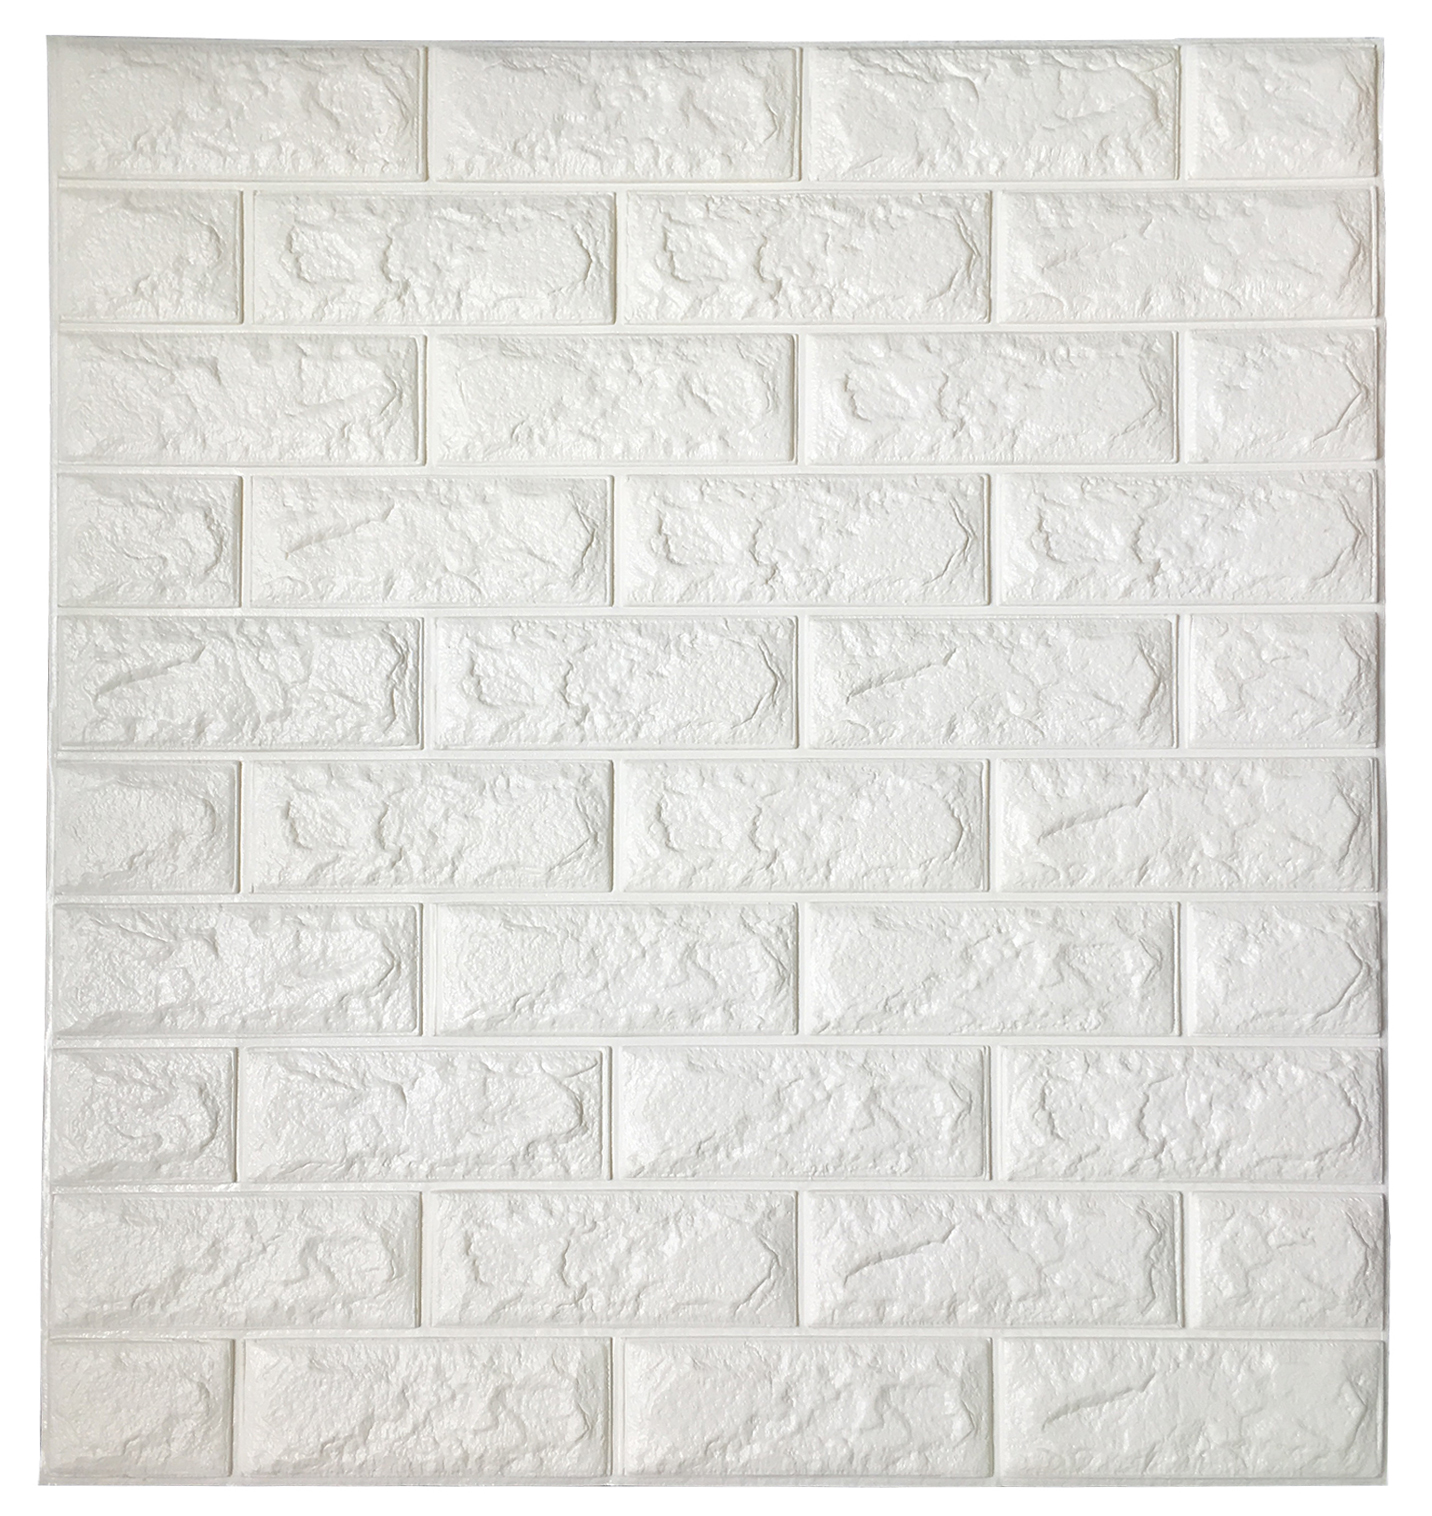 A06003 Peel & Stick Wallpaper Brick Design 8 Sheets 47 Sq.Ft